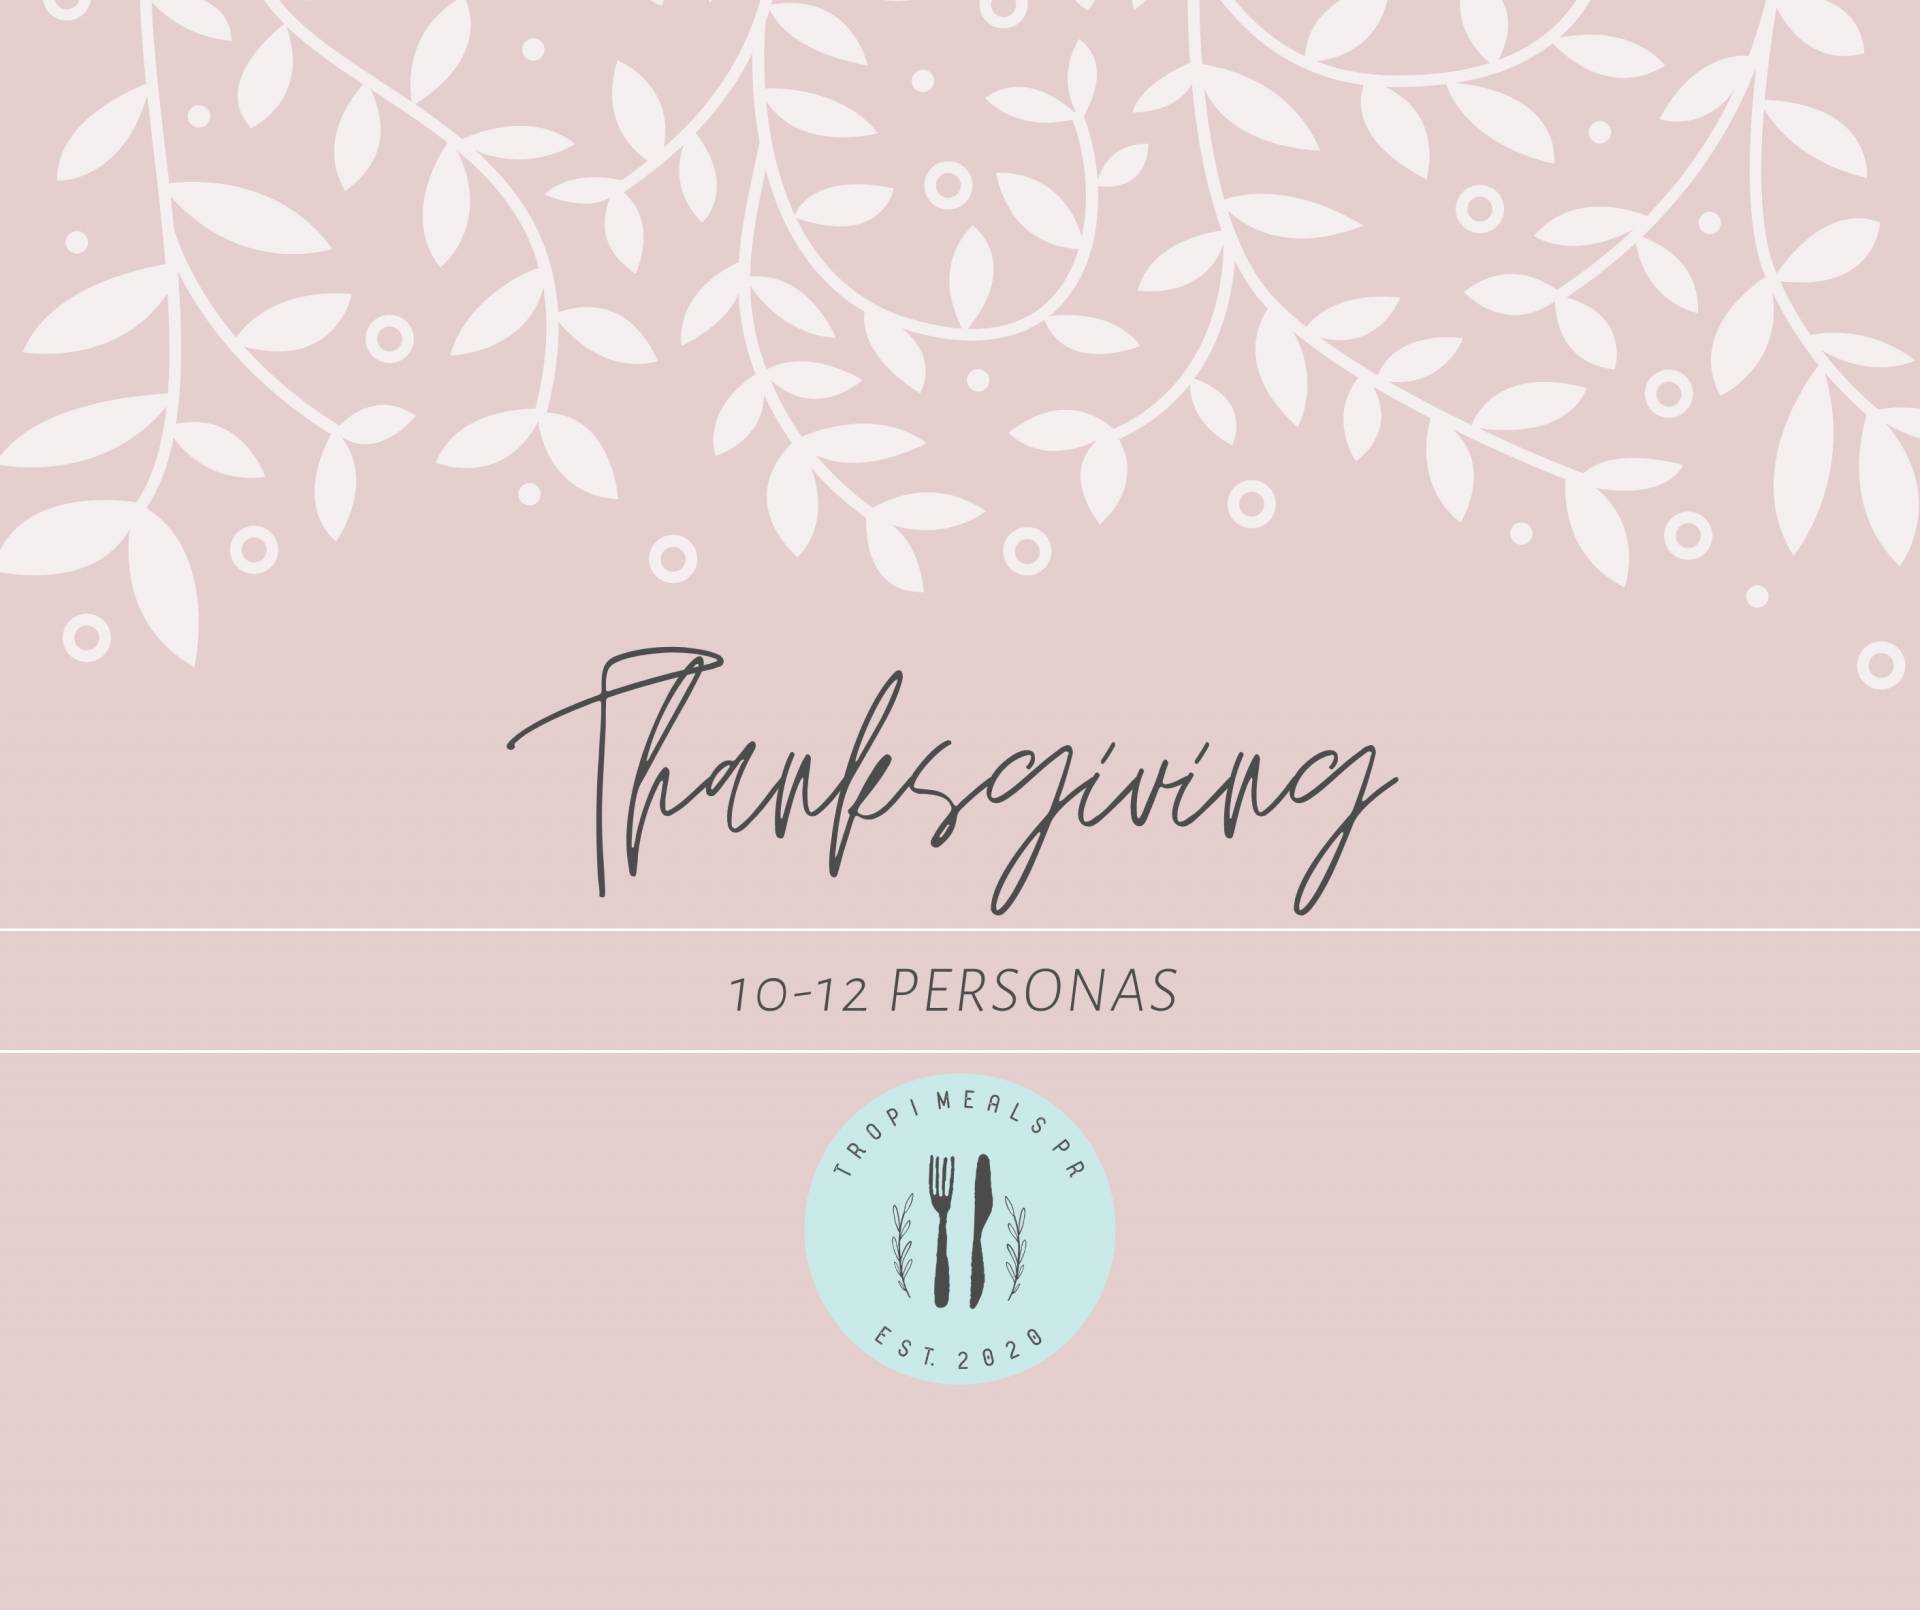 Thanksgiving Dinner 10-12 personas